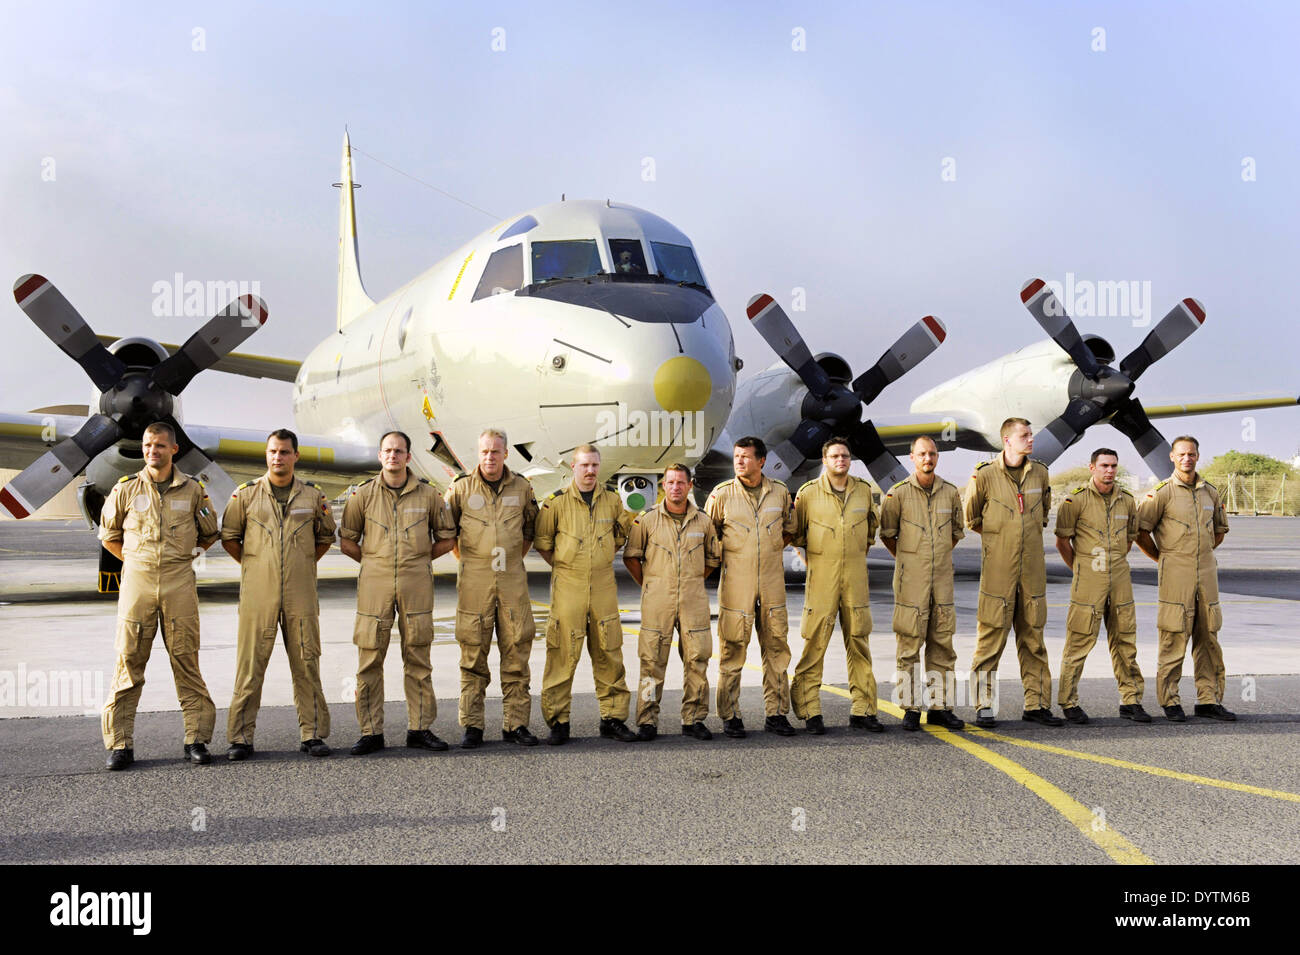 The crew of the P-3C Stock Photo